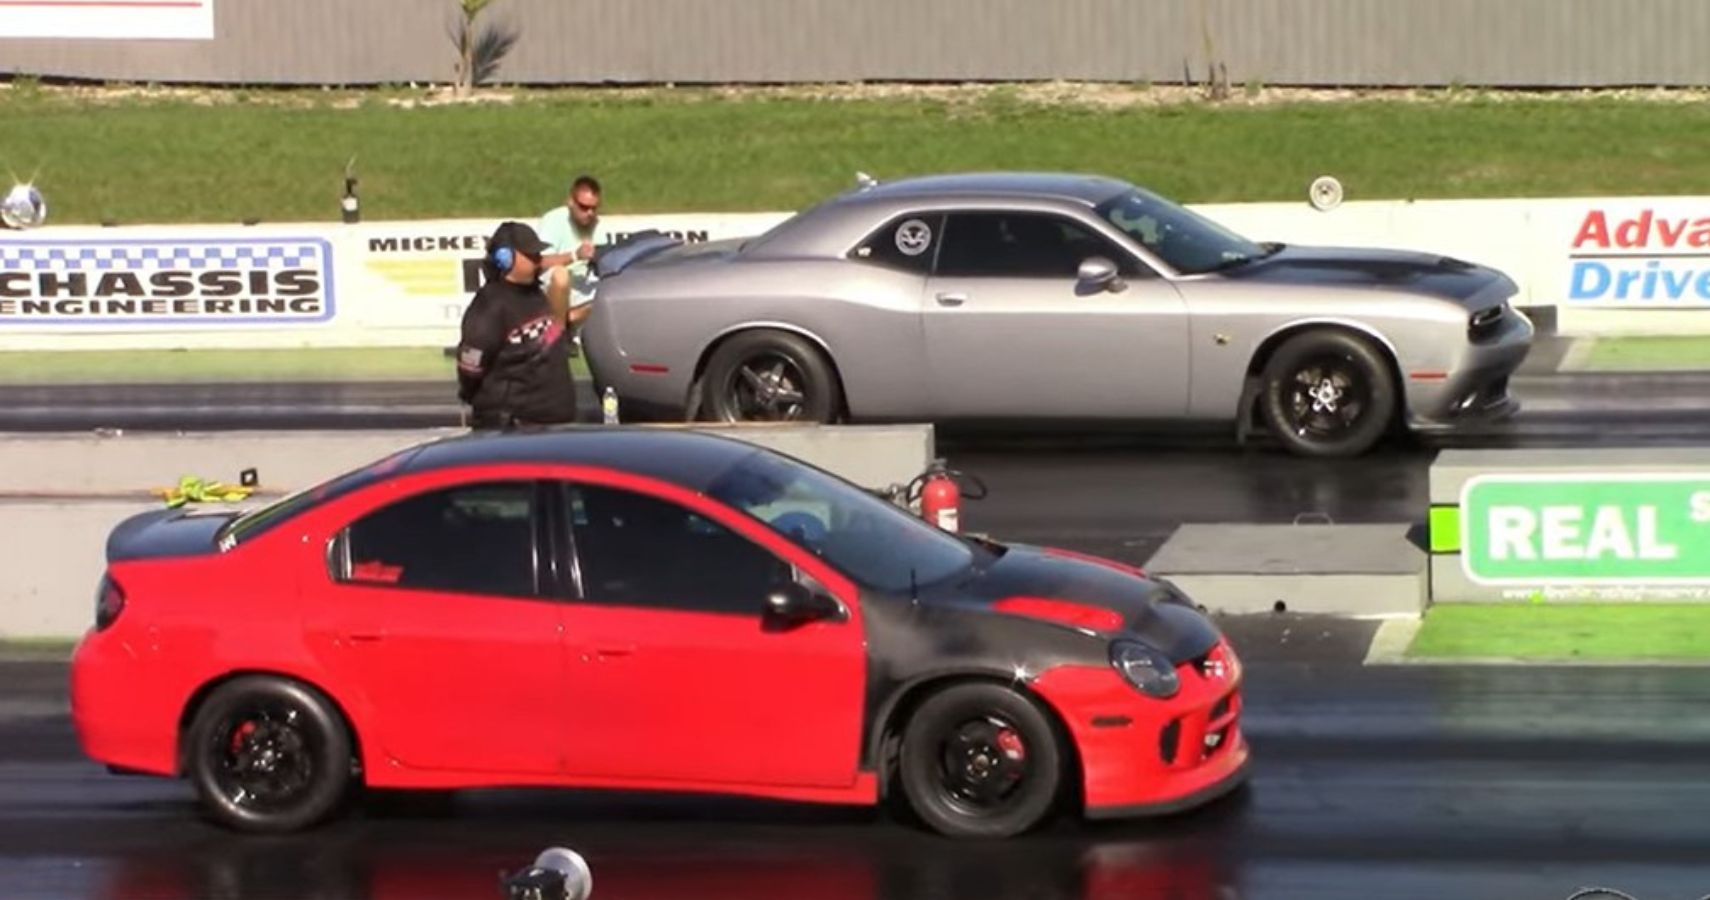 Dodge Neon versus Dodge Challenger Drag Race 